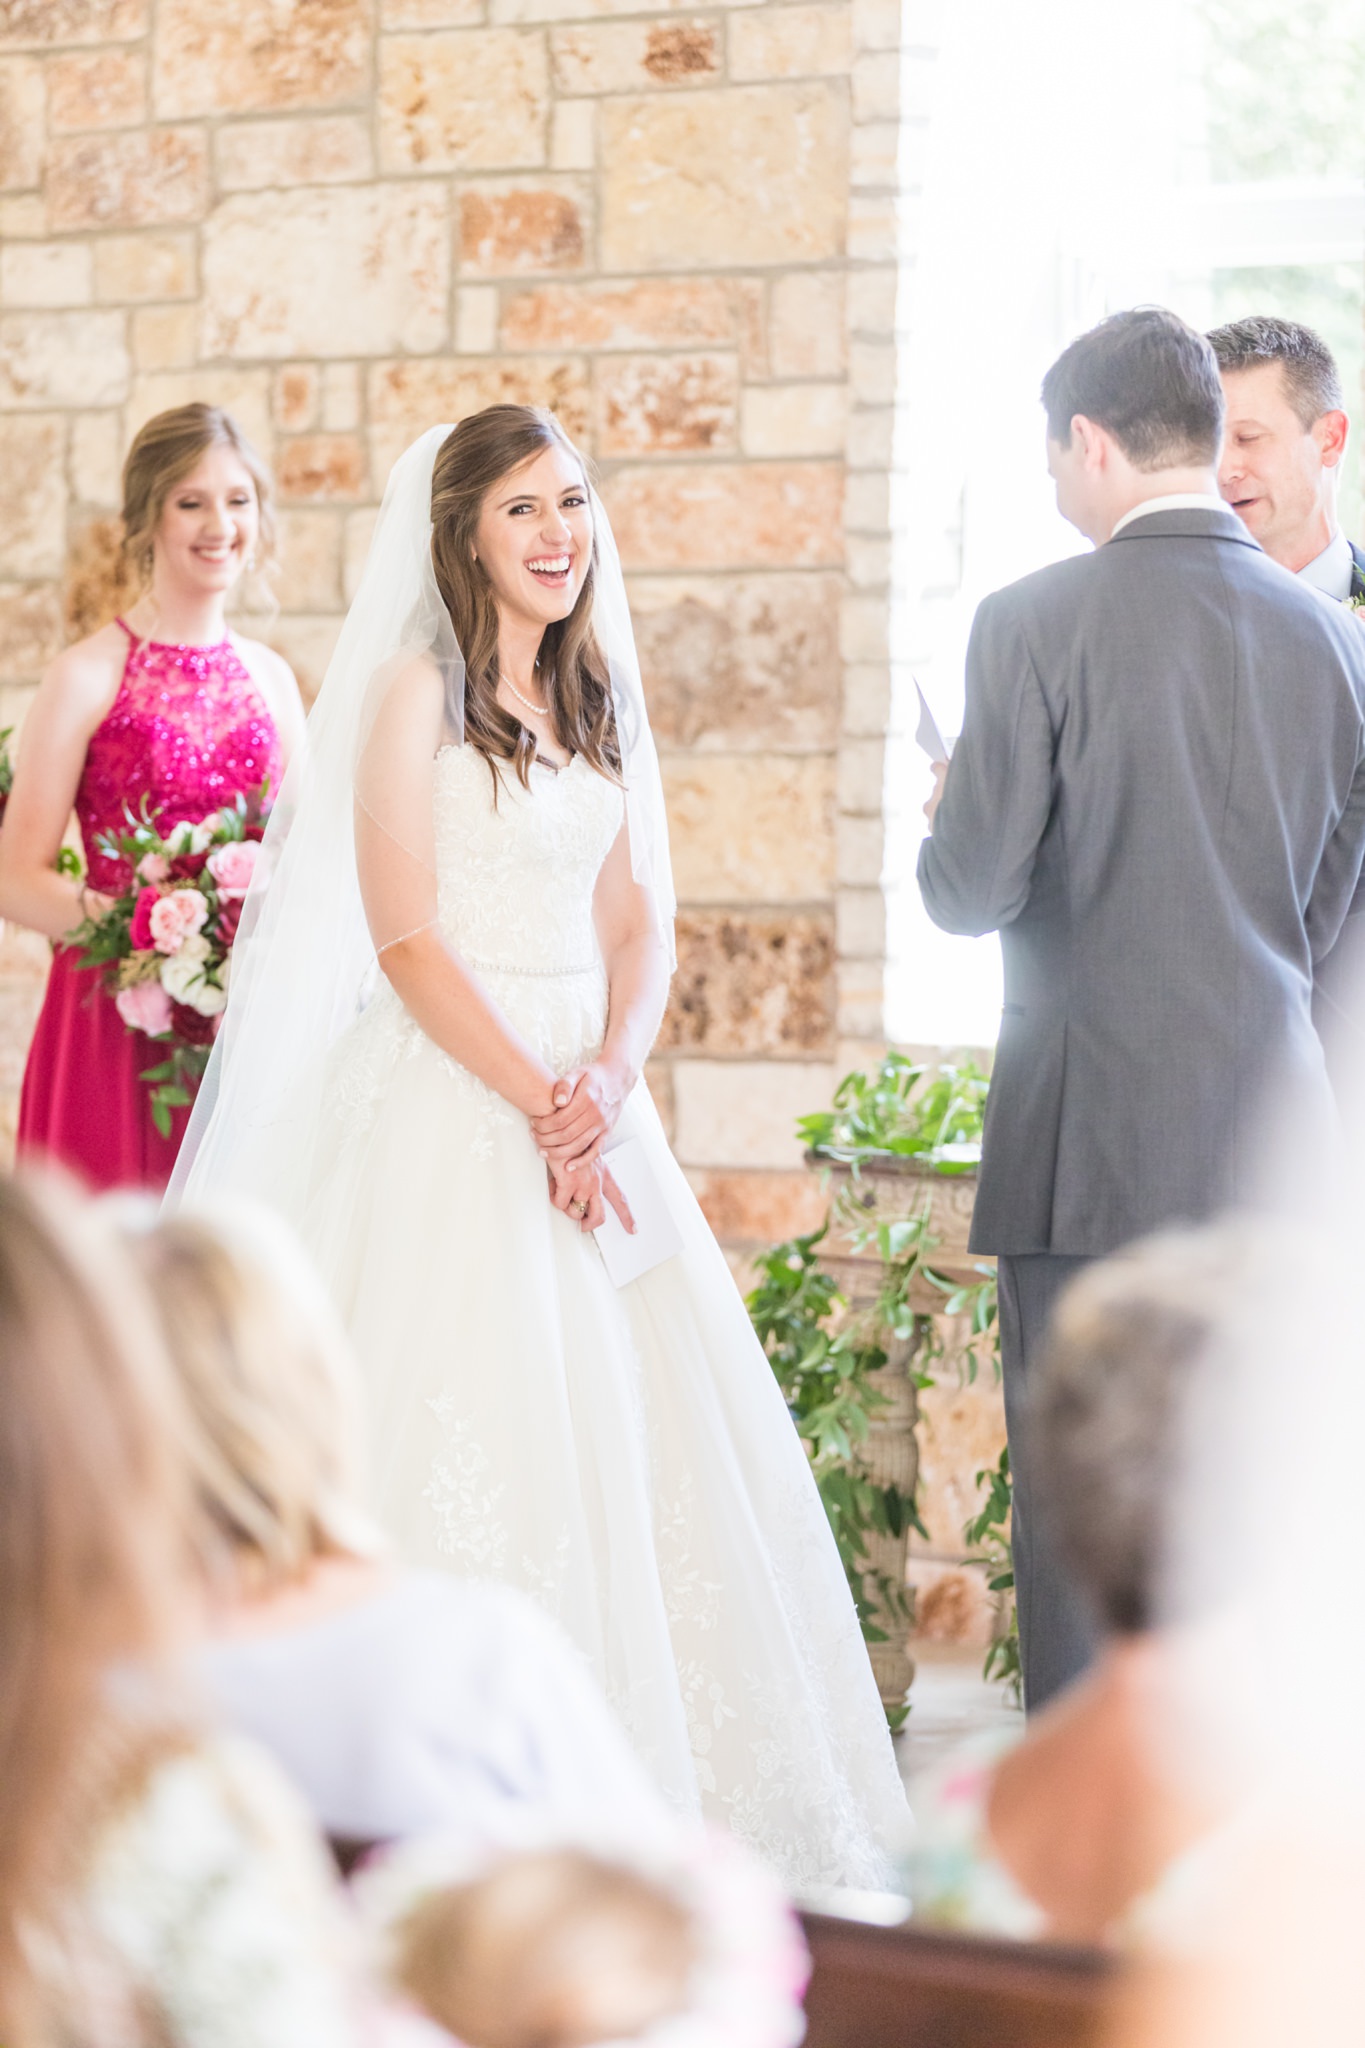 A Magenta & Blush Wedding at the Chandelier of Gruene in New Braunfels, TX by Dawn Elizabeth Studios, San Antonio Wedding Photographer